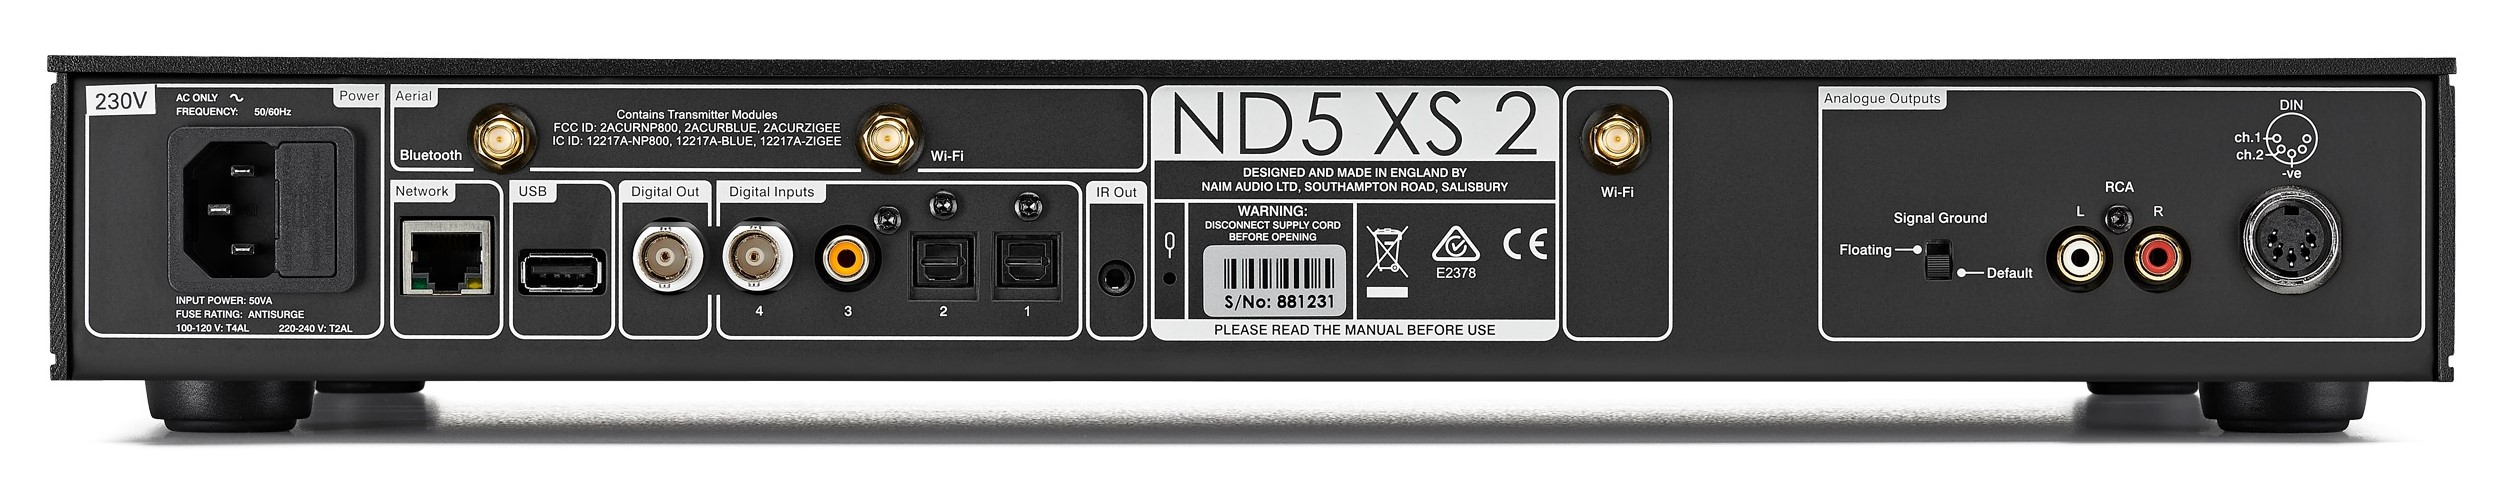 Naim ND5 XS 2 streamer